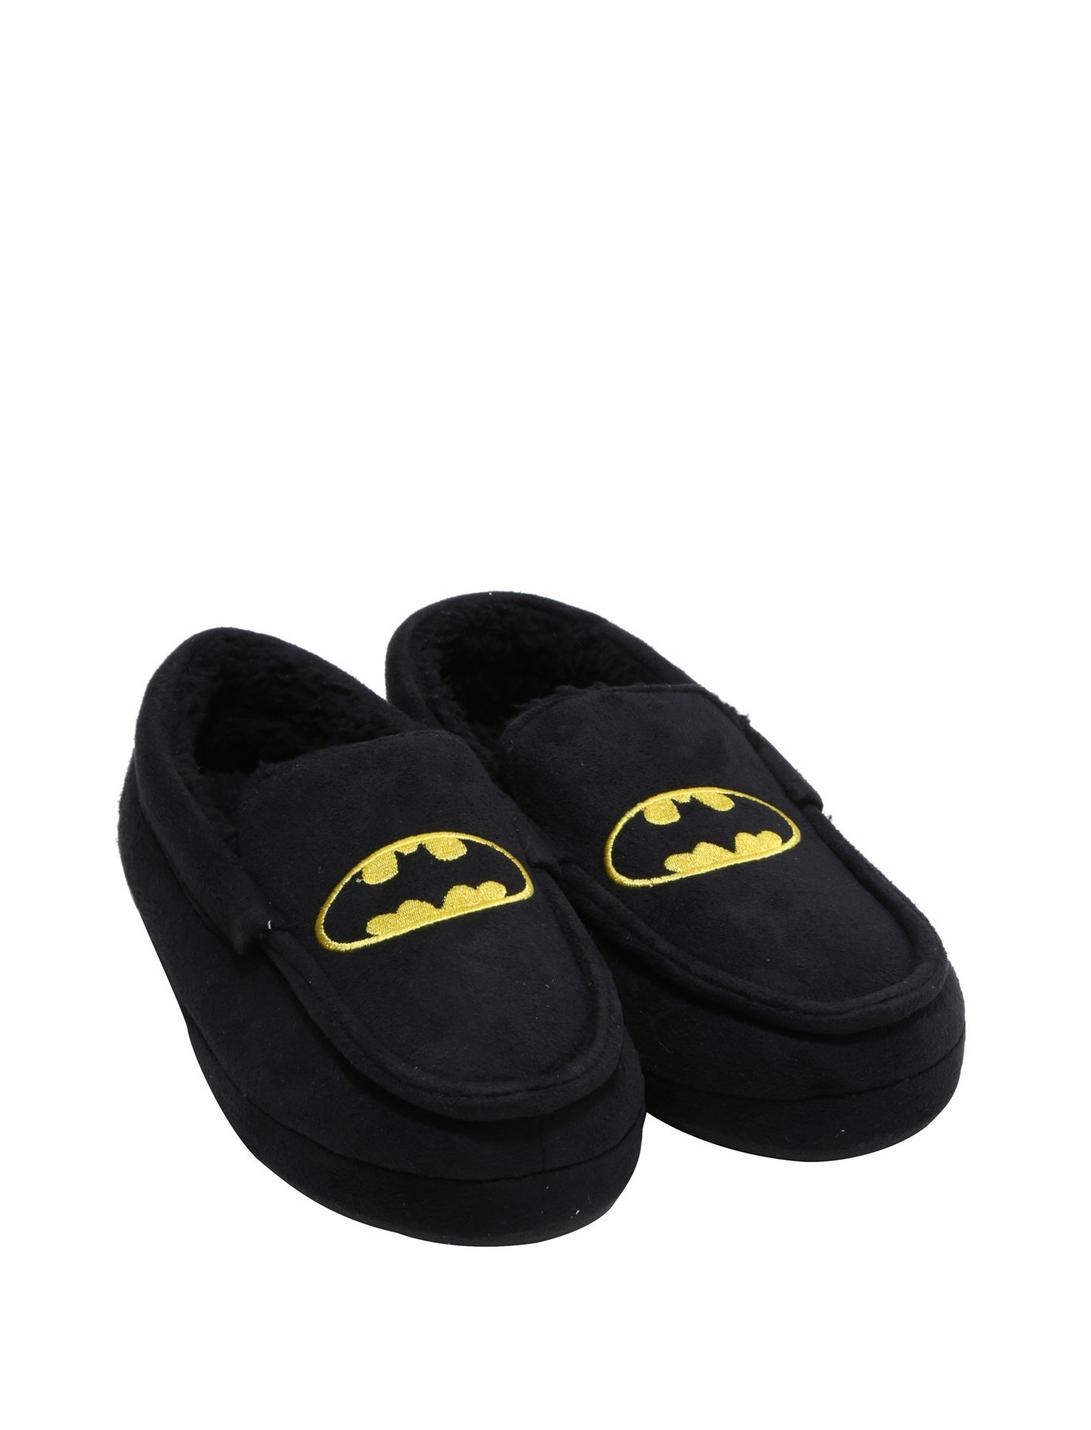 DC Comics Batman Moccasin Slippers, BLACK, hi-res